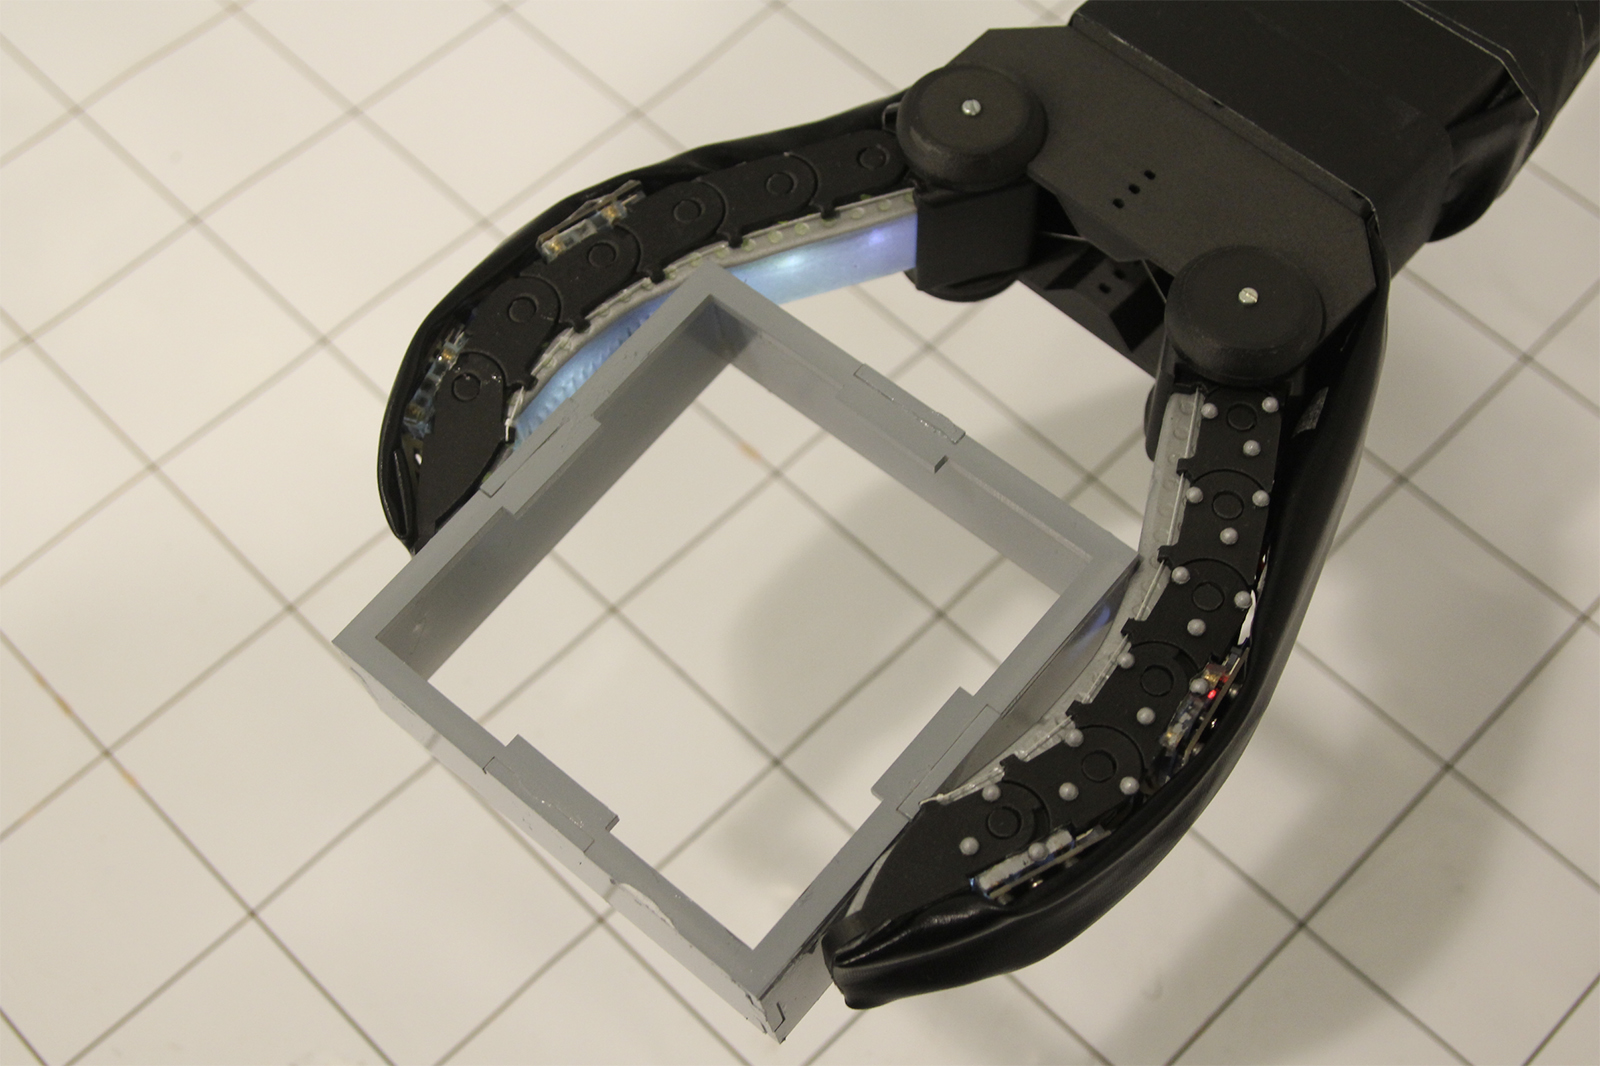 mit csail gelflex robot hand camera gripper glassbox copy